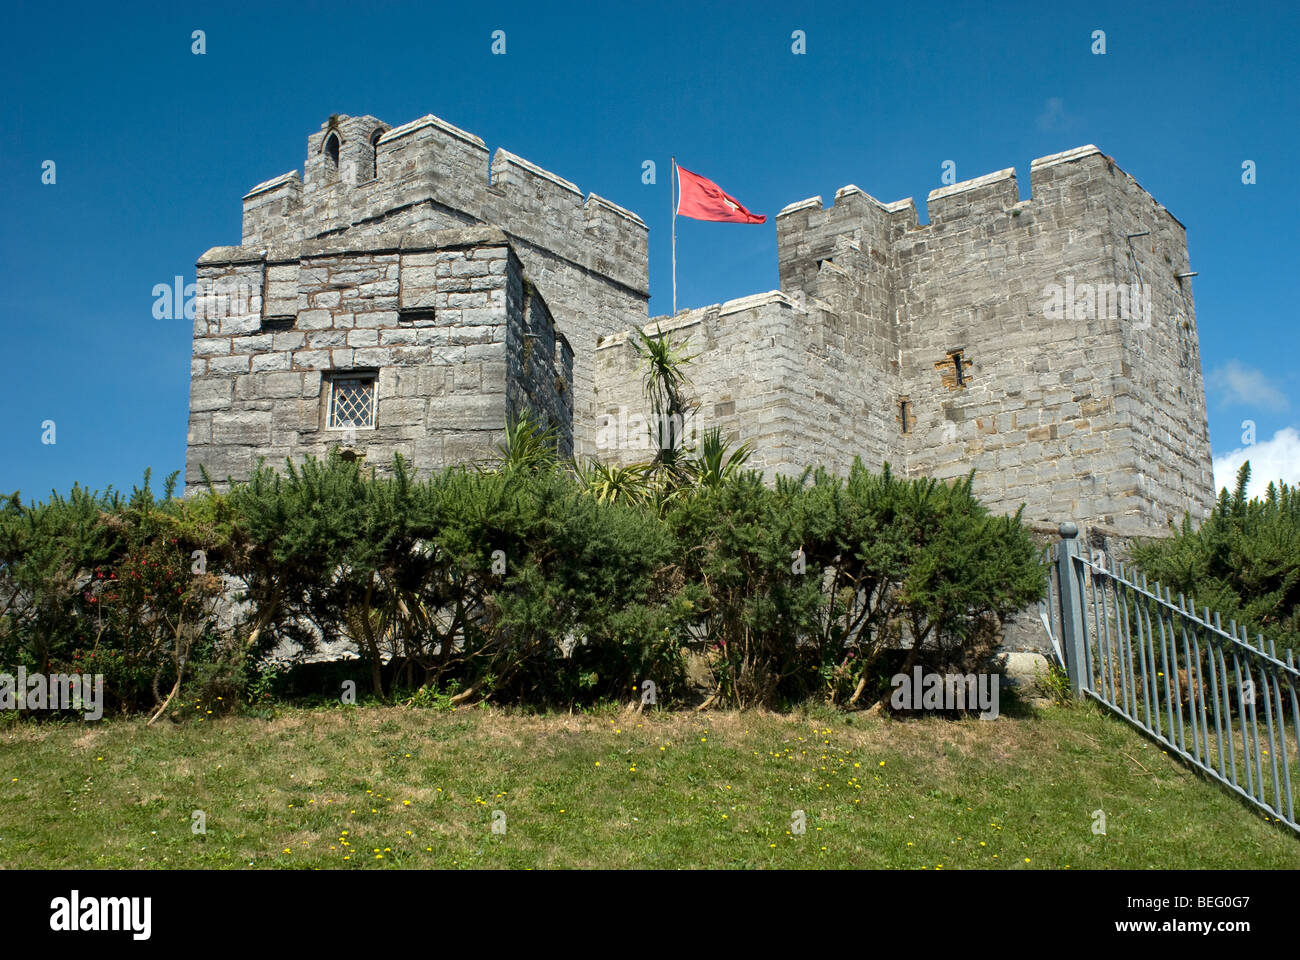 Dettaglio della parte del castello che mostra le merlature e una red flag IOM a Castletown, Isola di Man in una giornata di sole Foto Stock